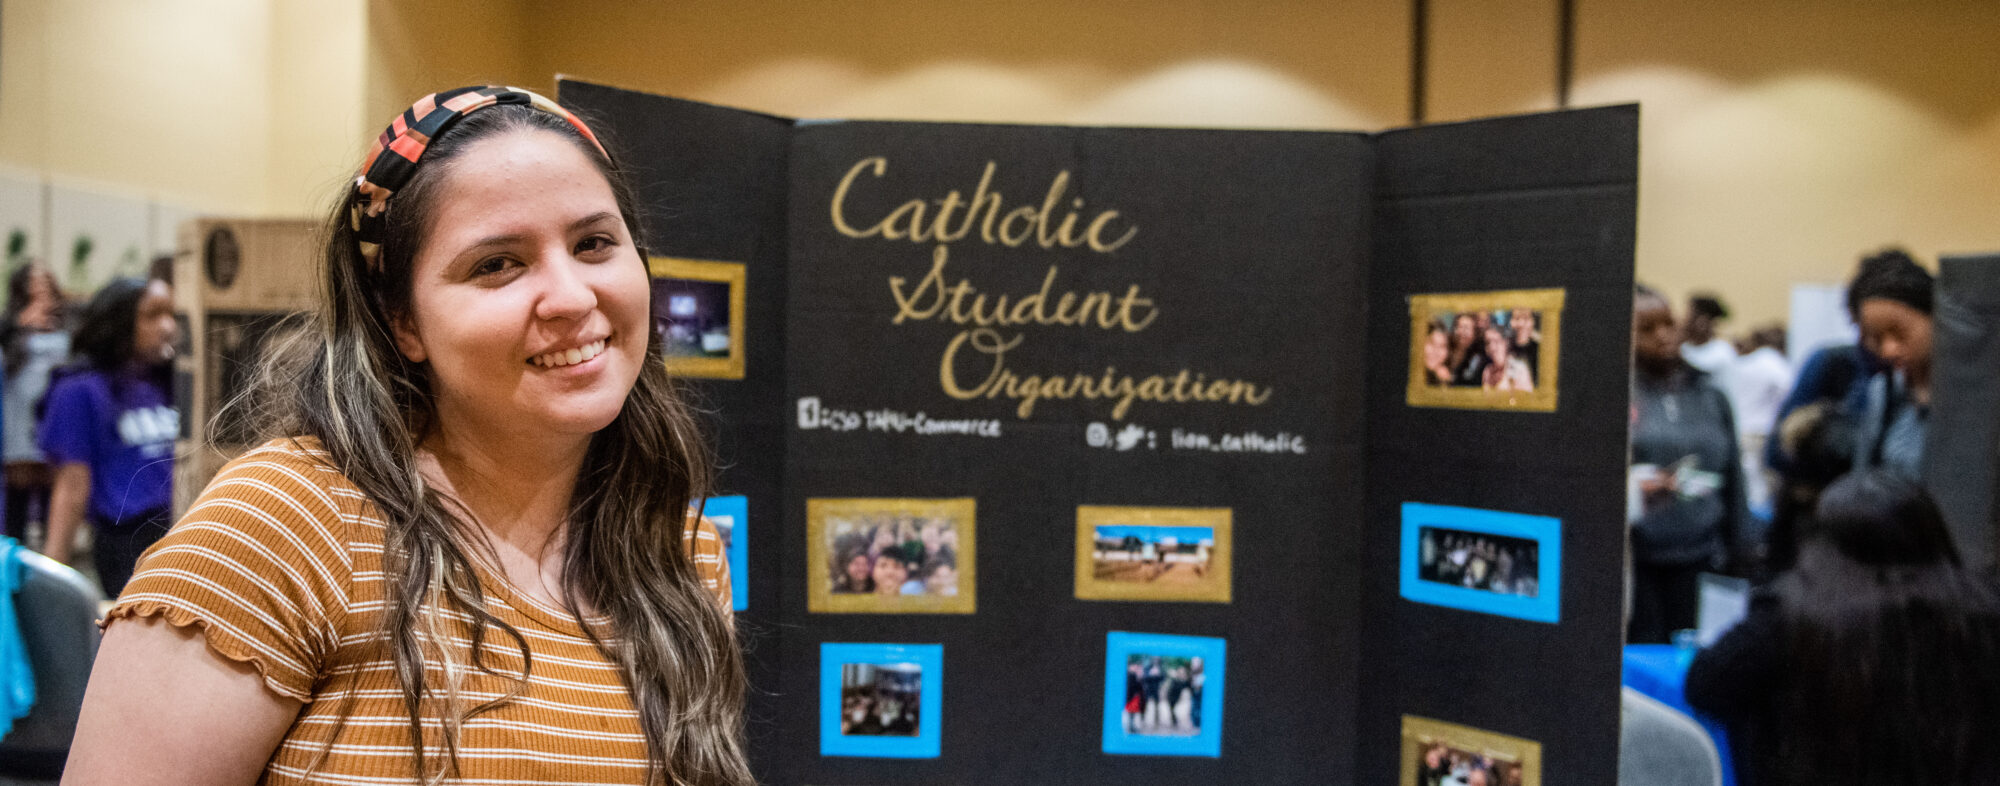 一名学生面带微笑，身后是印有天主教学生会照片的海报.